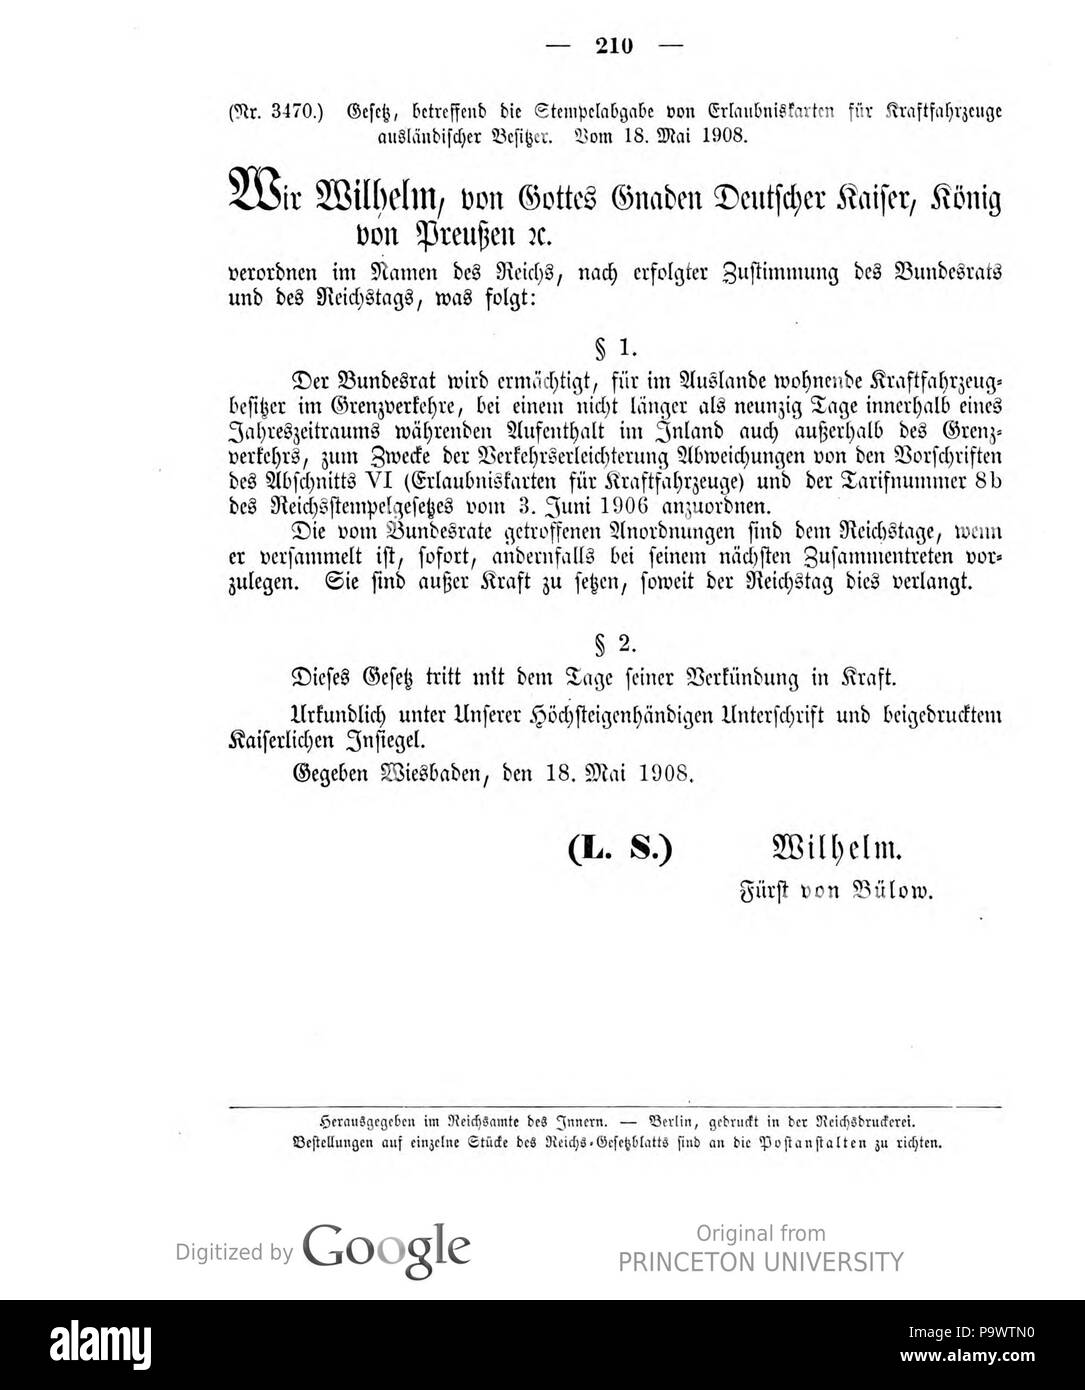 427 Deutsches Reichsgesetzblatt 1908 025 210 Stock Photo